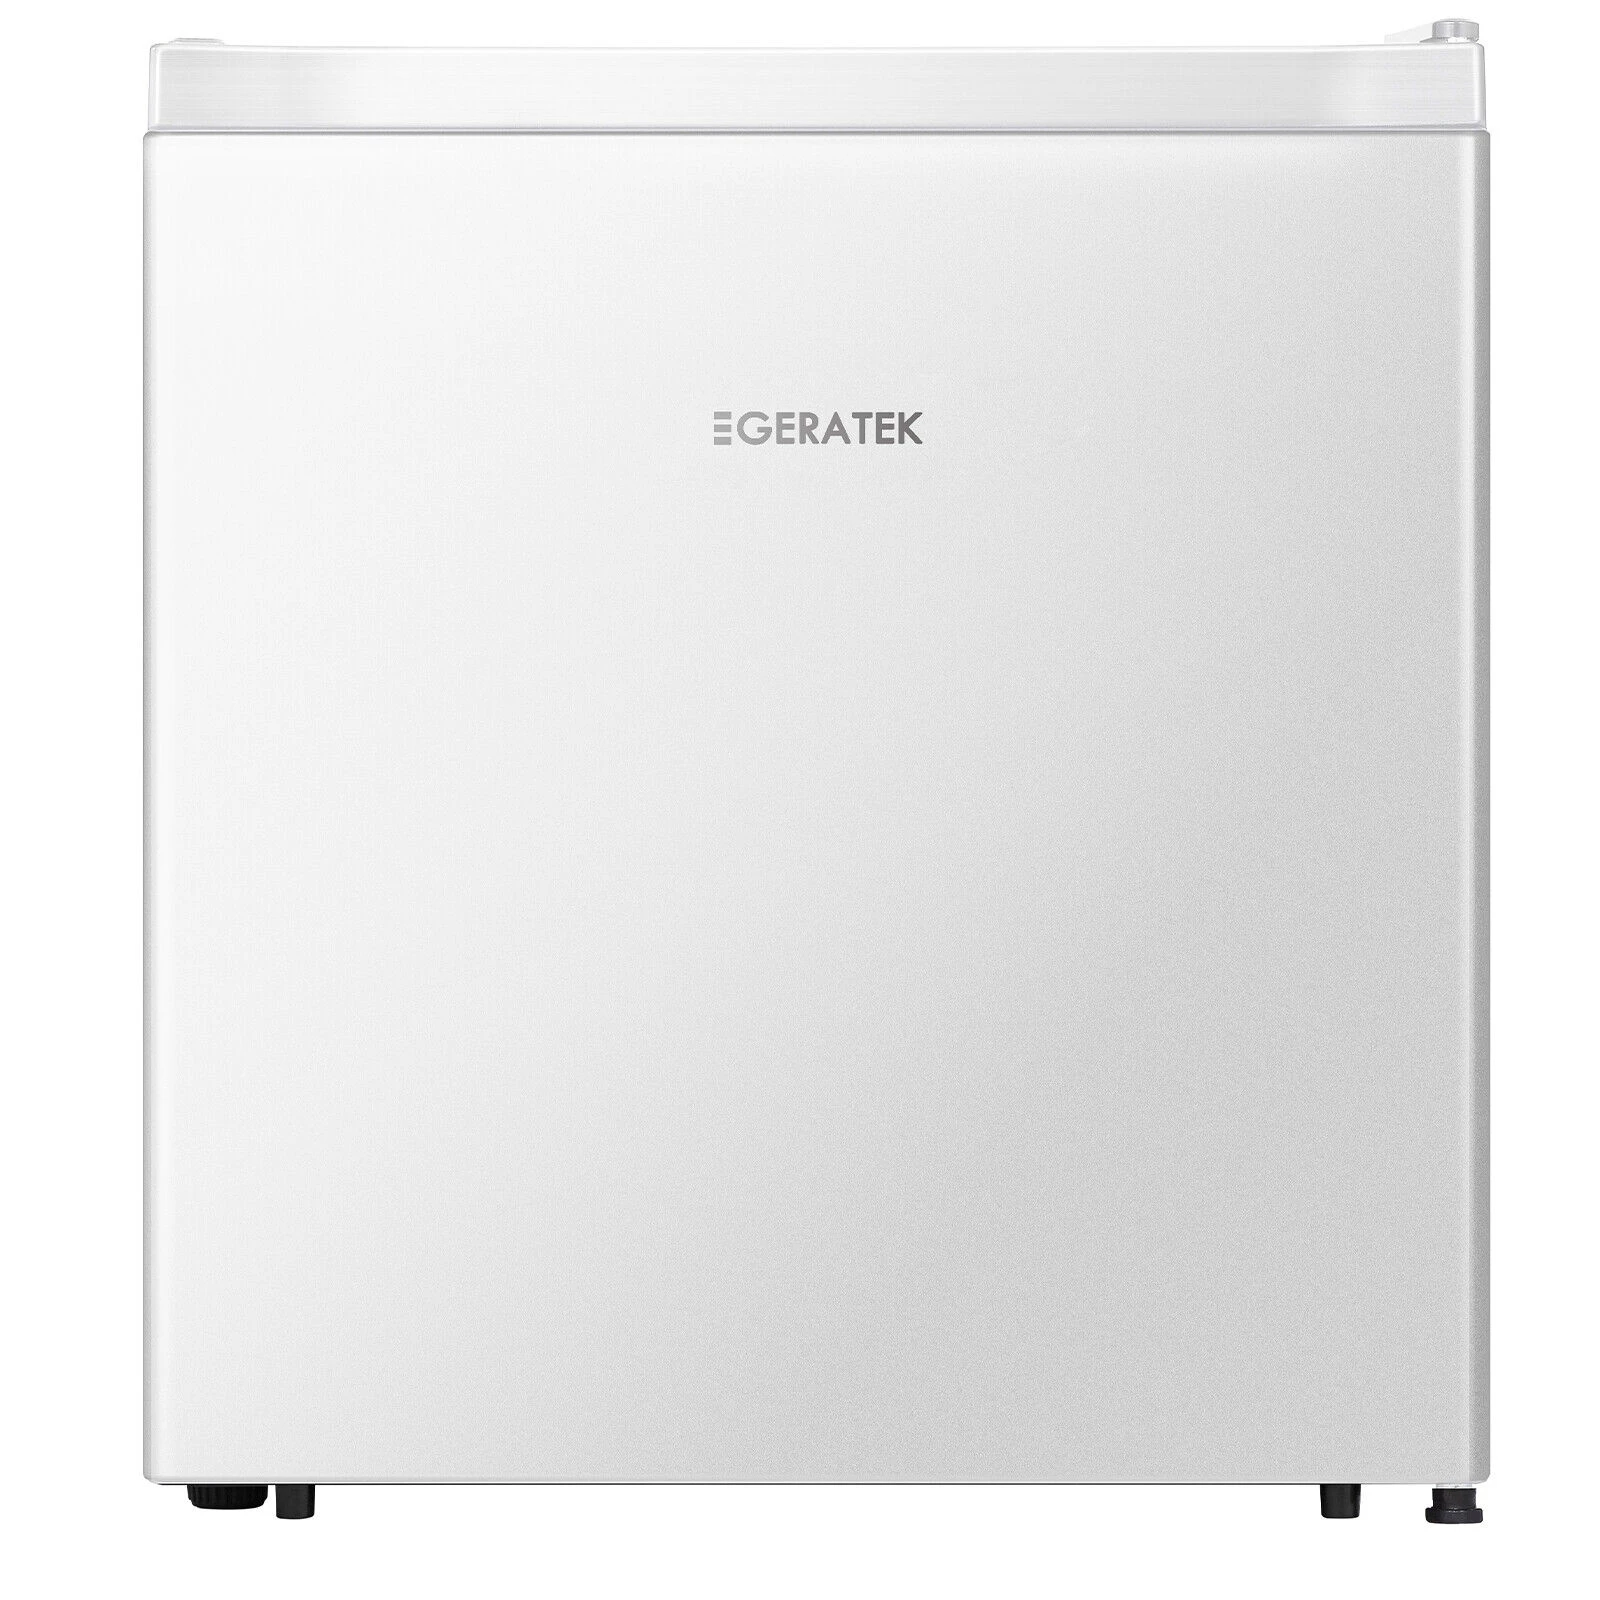 GERATEK Mini-Kühlschrank KB4100W, 50 x 44,5 cm